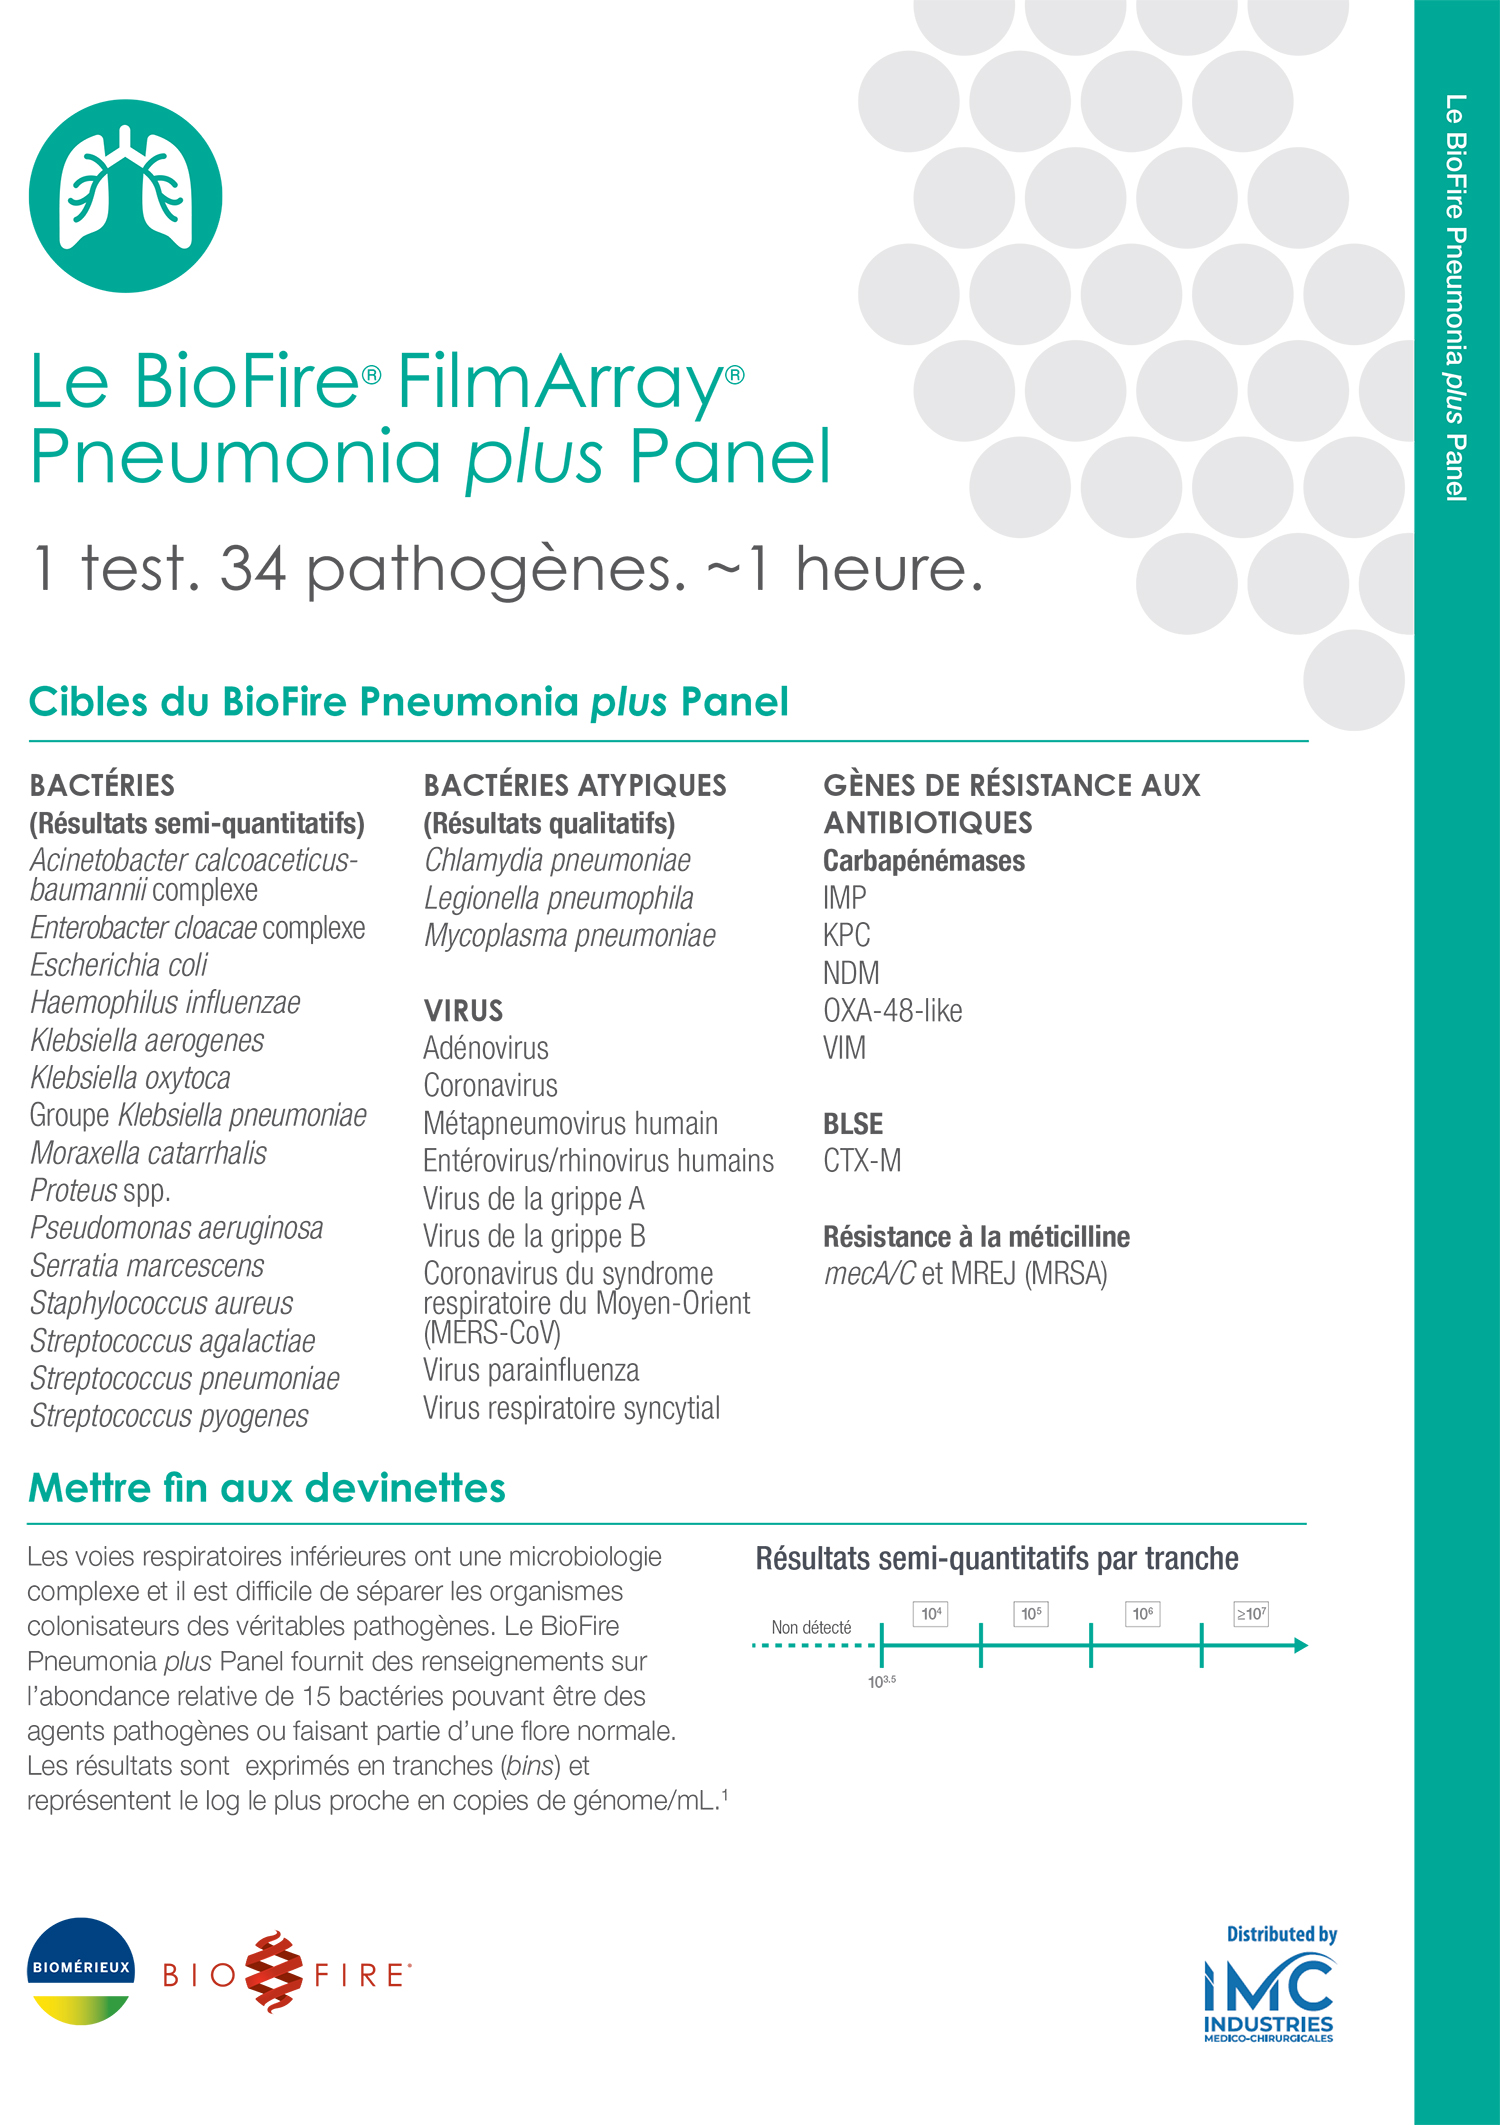 Le BioFire® FilmArray® Pneumonia plus Panel